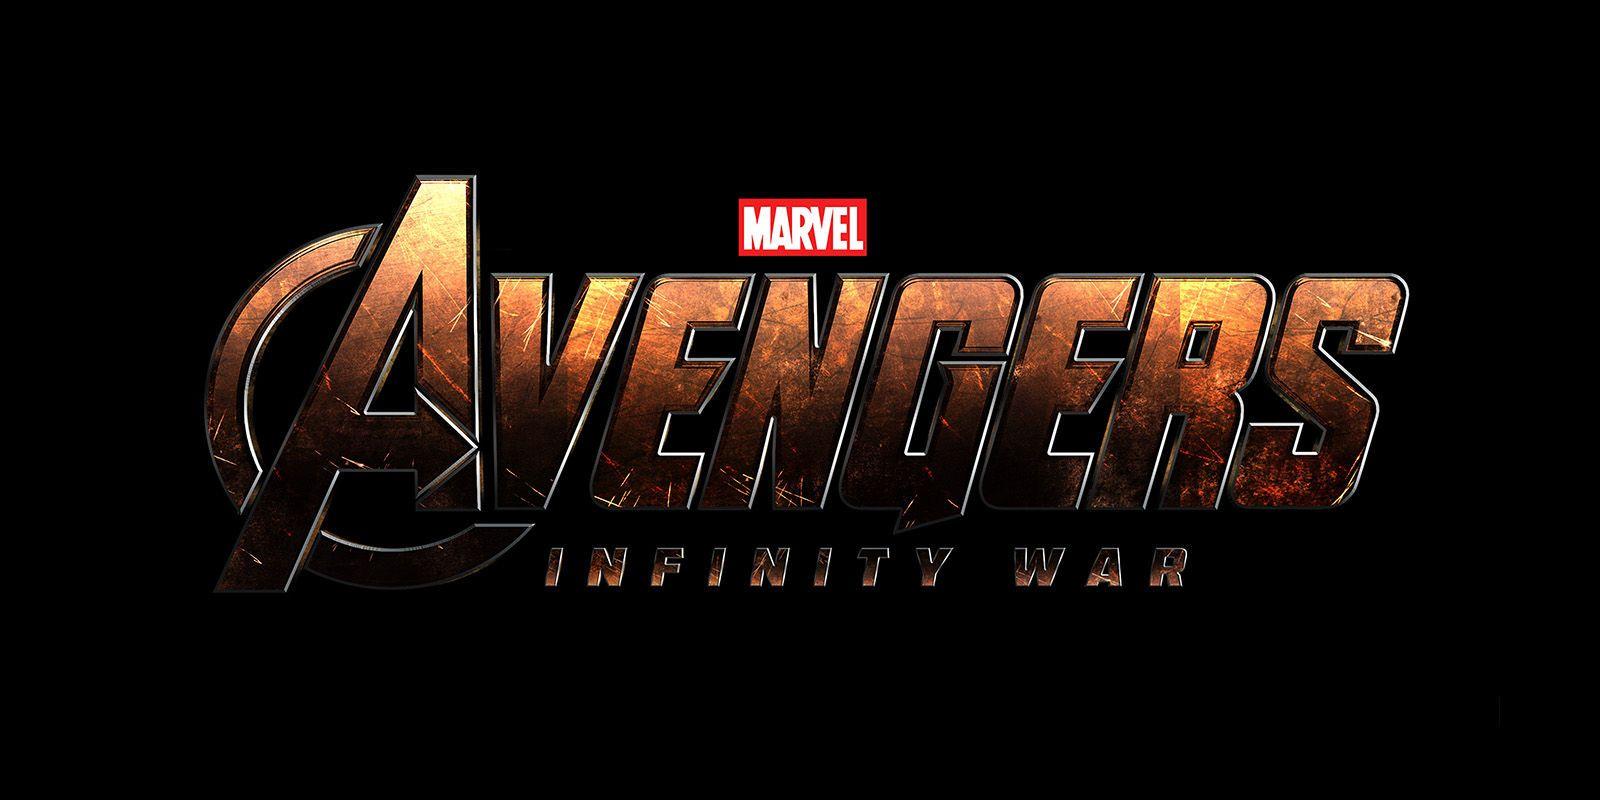 Marvel 2018 Logo - Avengers: Infinity War